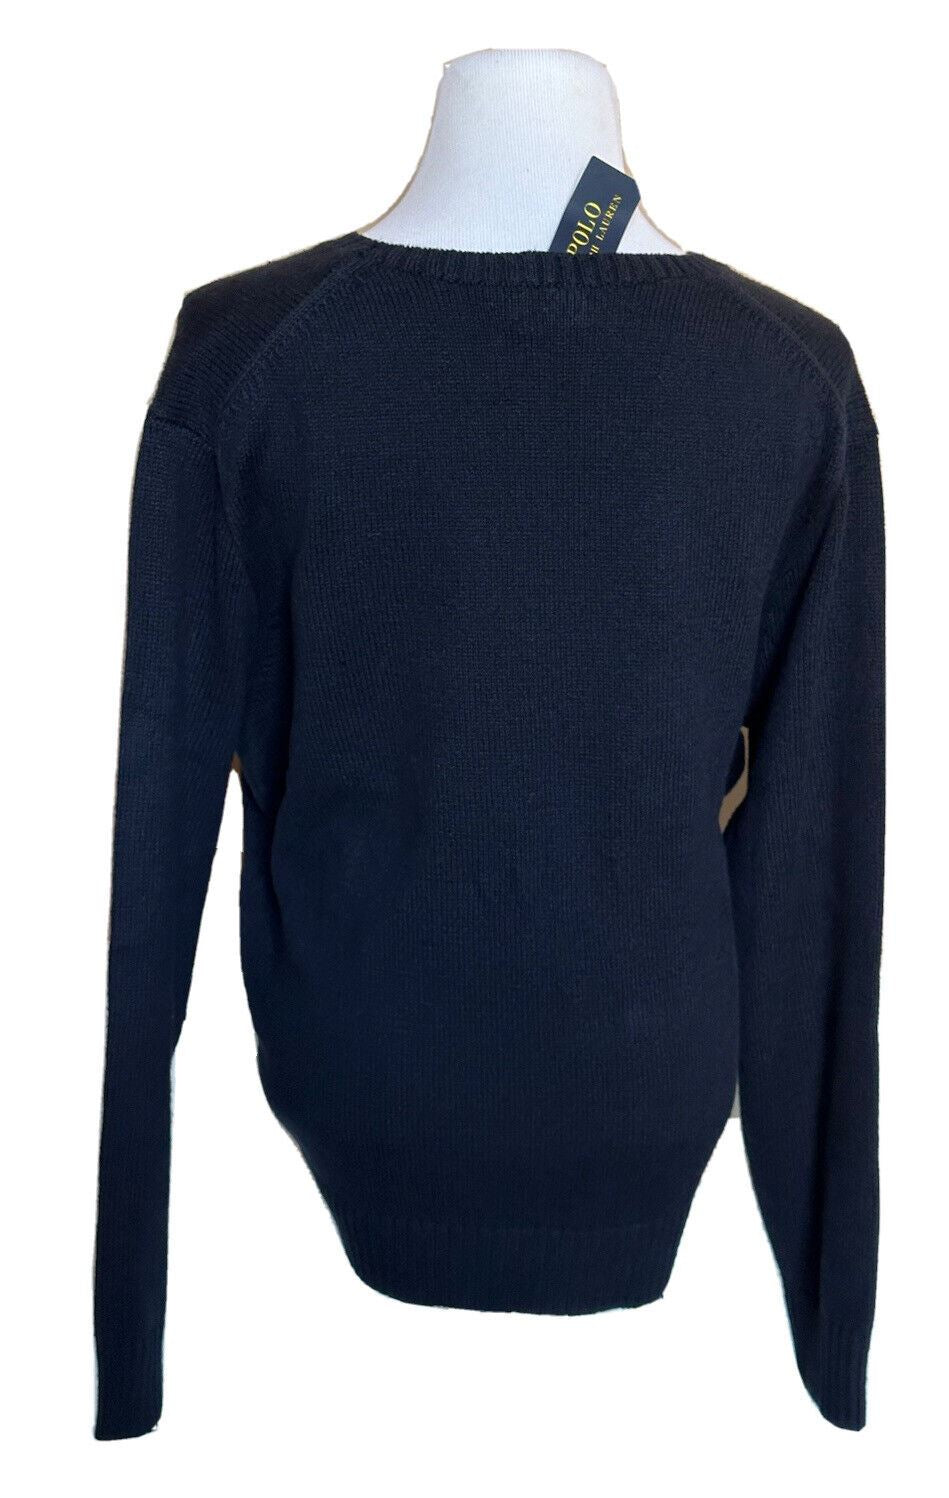 СЗТ 428 долларов США Polo Ralph Lauren Big Pony Bear Синий свитер из хлопка/льна 2XB 